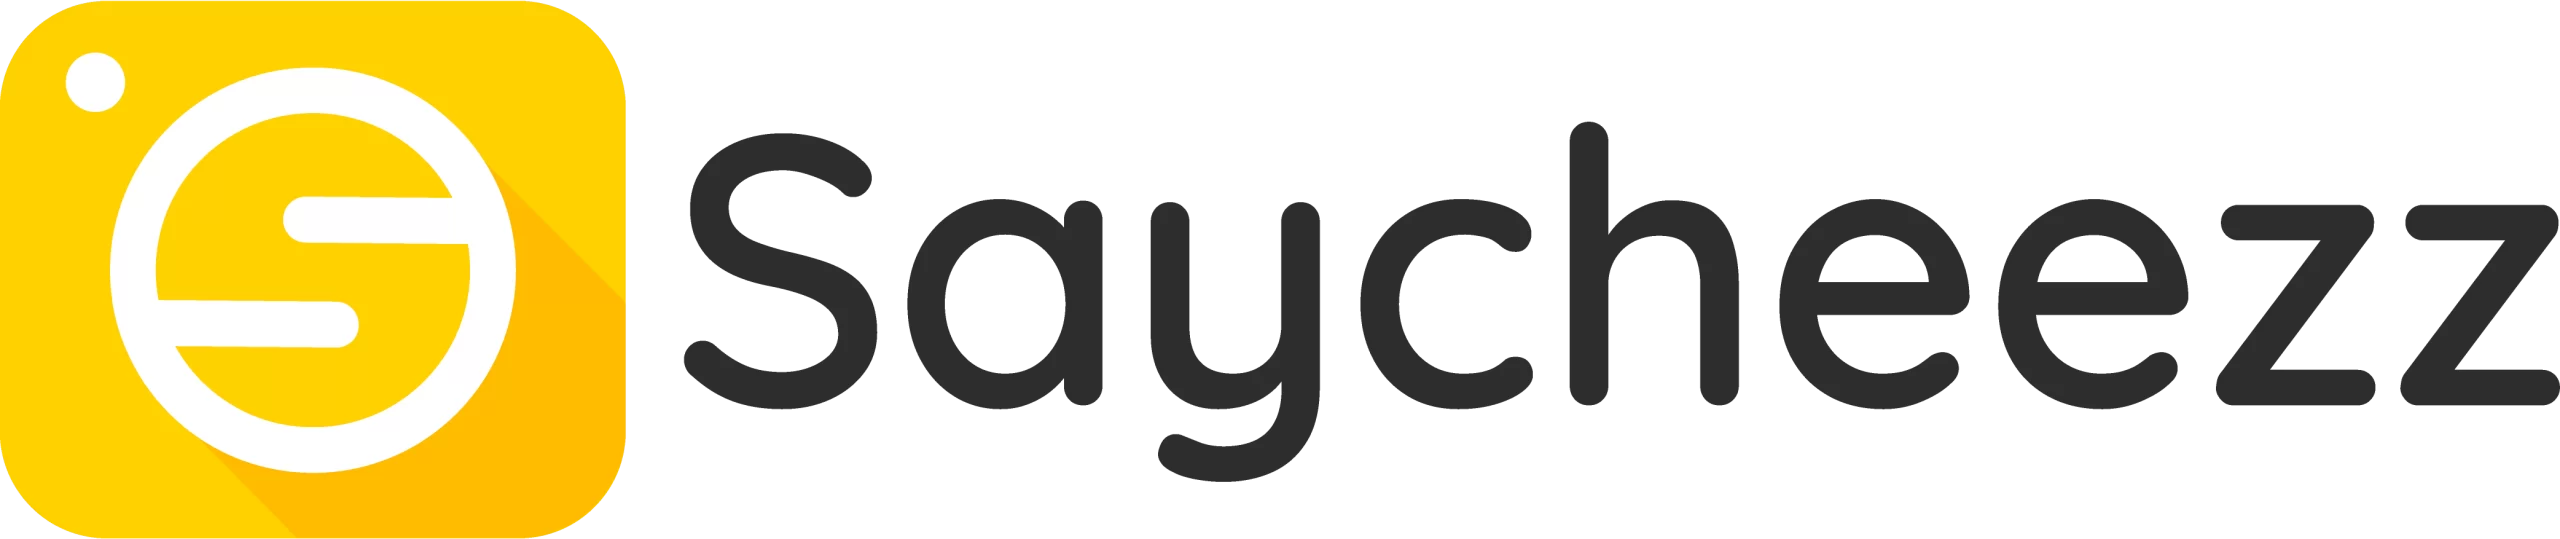 Saycheezz Logo